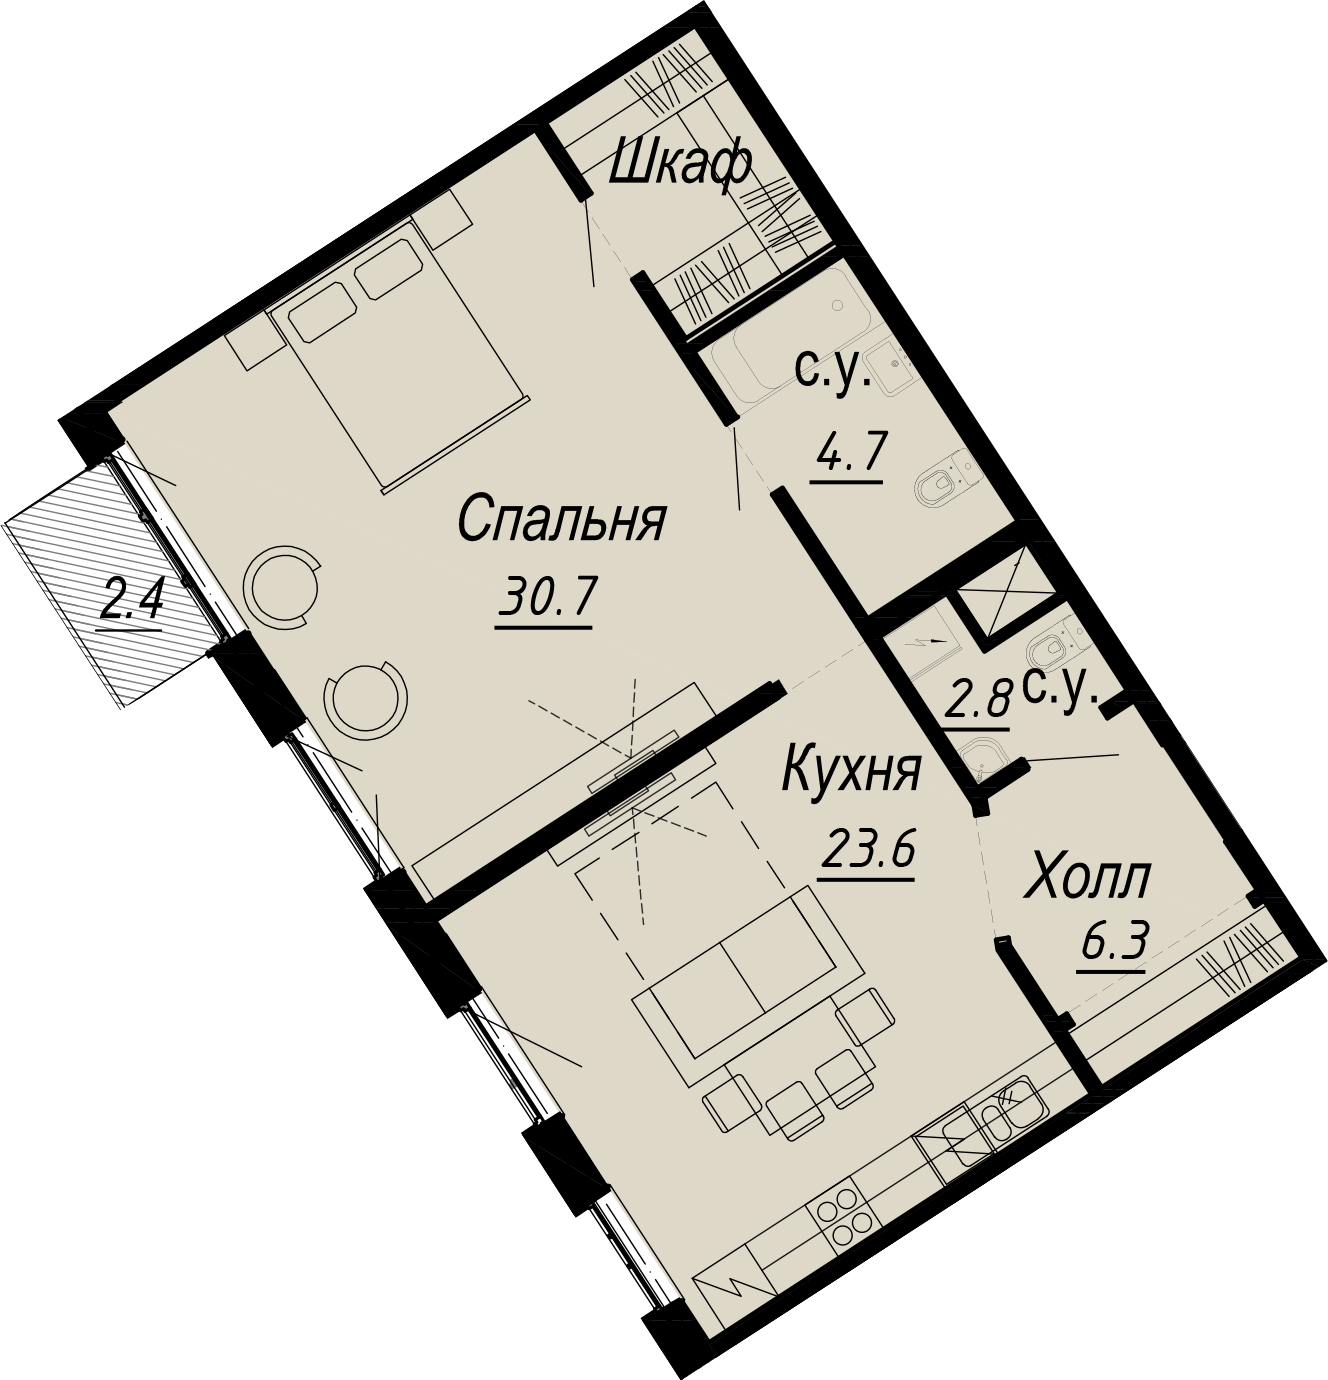 1-комнатная квартира  №2-6 в Meltzer Hall: 69.3 м², этаж 6 - купить в Санкт-Петербурге